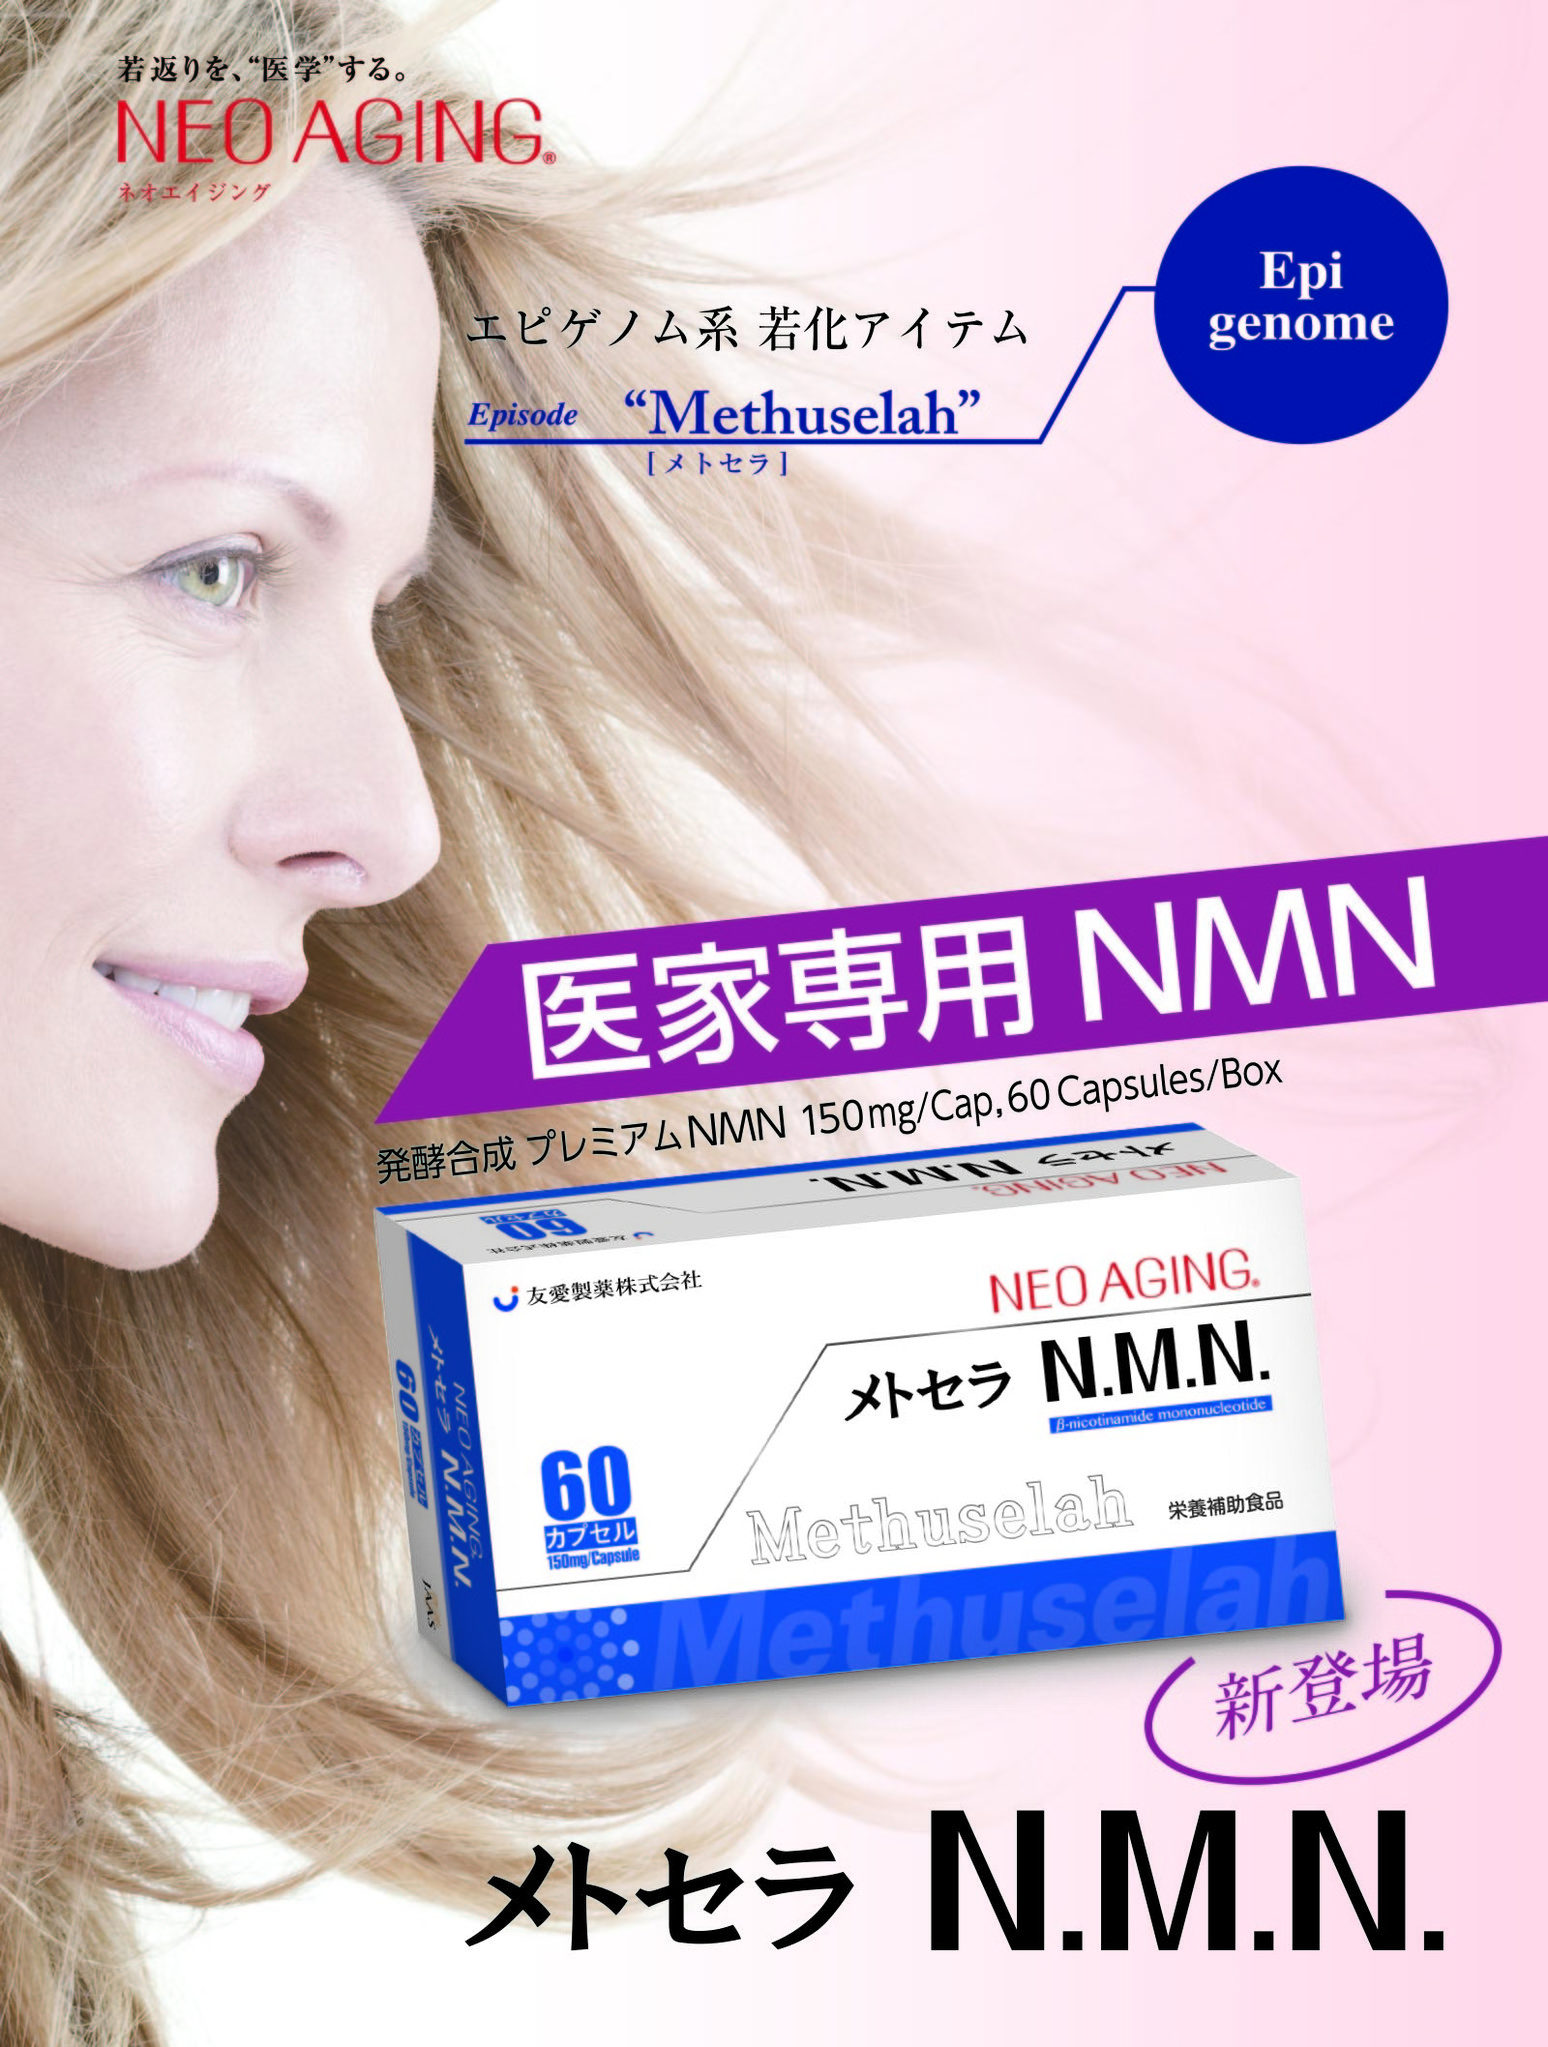 NMN 若返り サプリメント アンチエイジング 長寿 健康食品 2ヶ月分 www